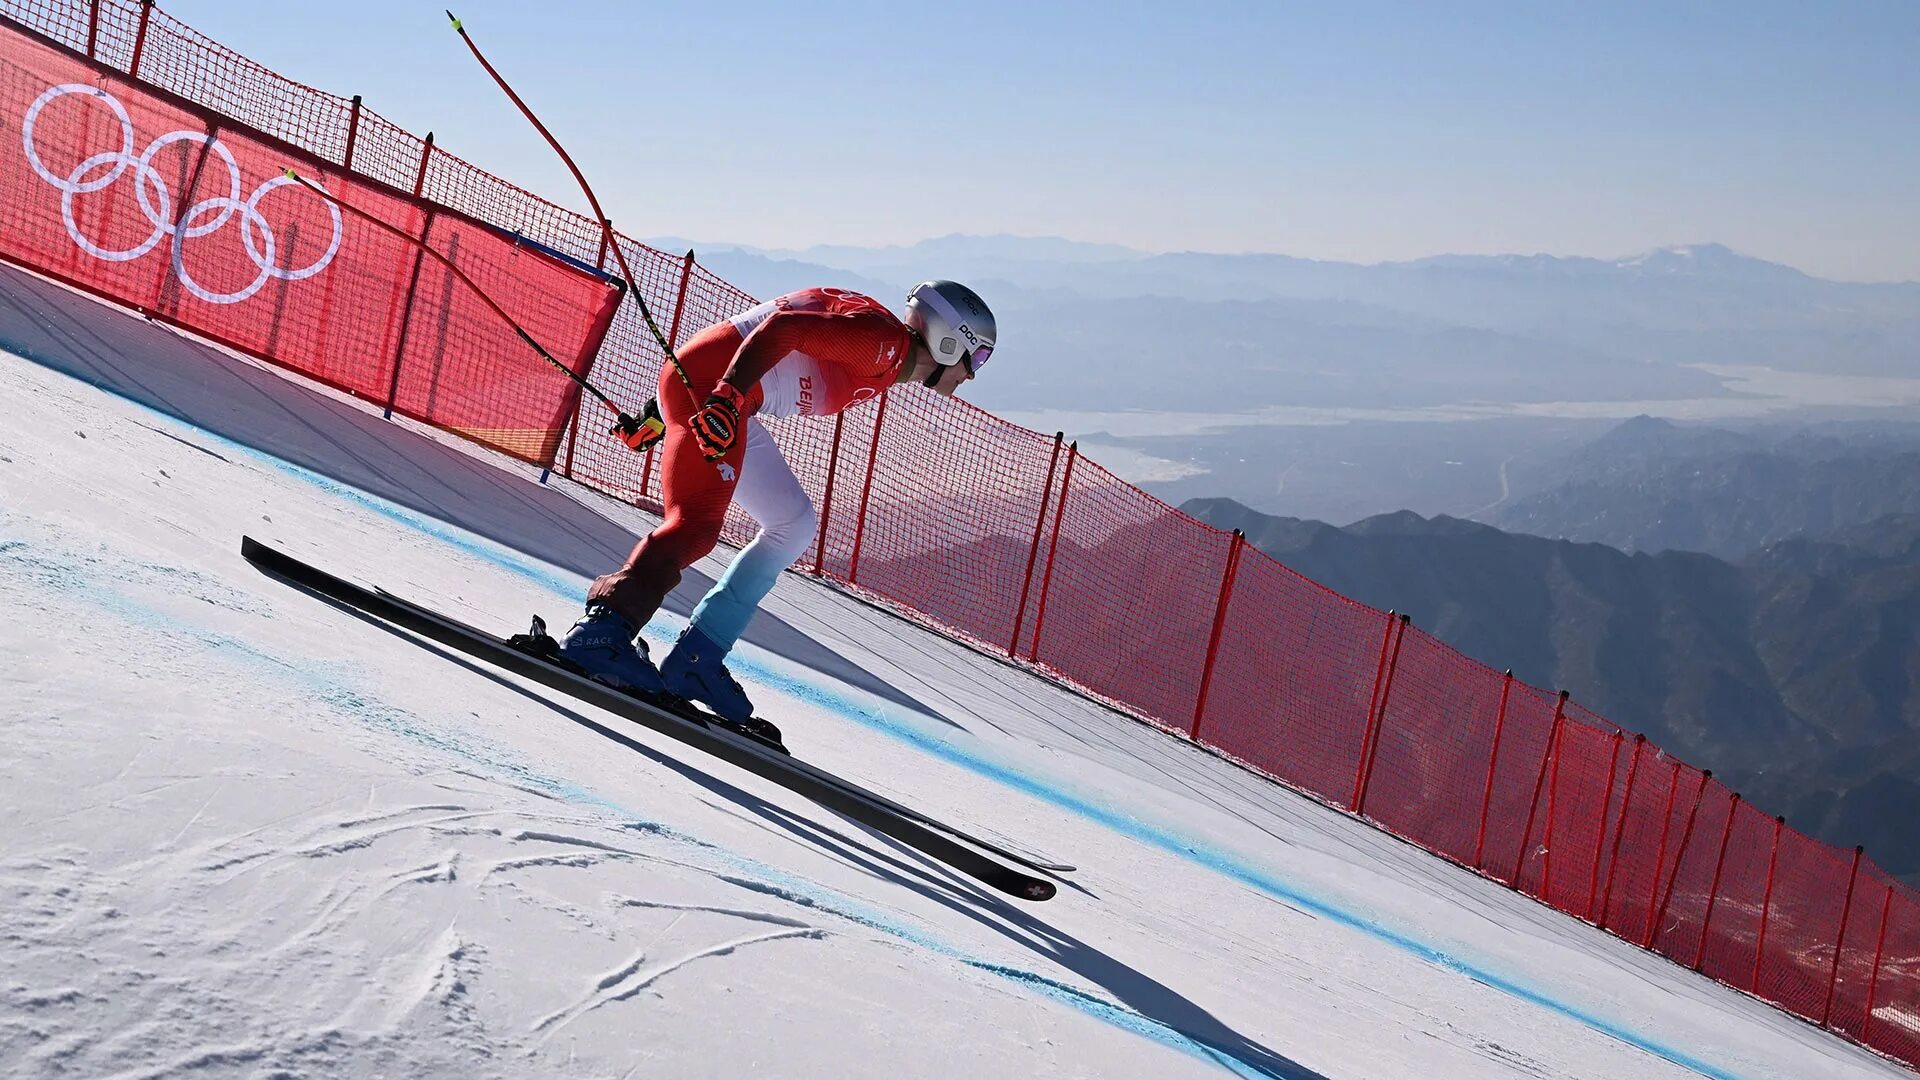 Дисциплина лыж. Слалом (горнолыжный спорт). Горнолыжный спорт слалом гигант. Beijing 2022 Alpine Skiing. Лыжи для слалома.